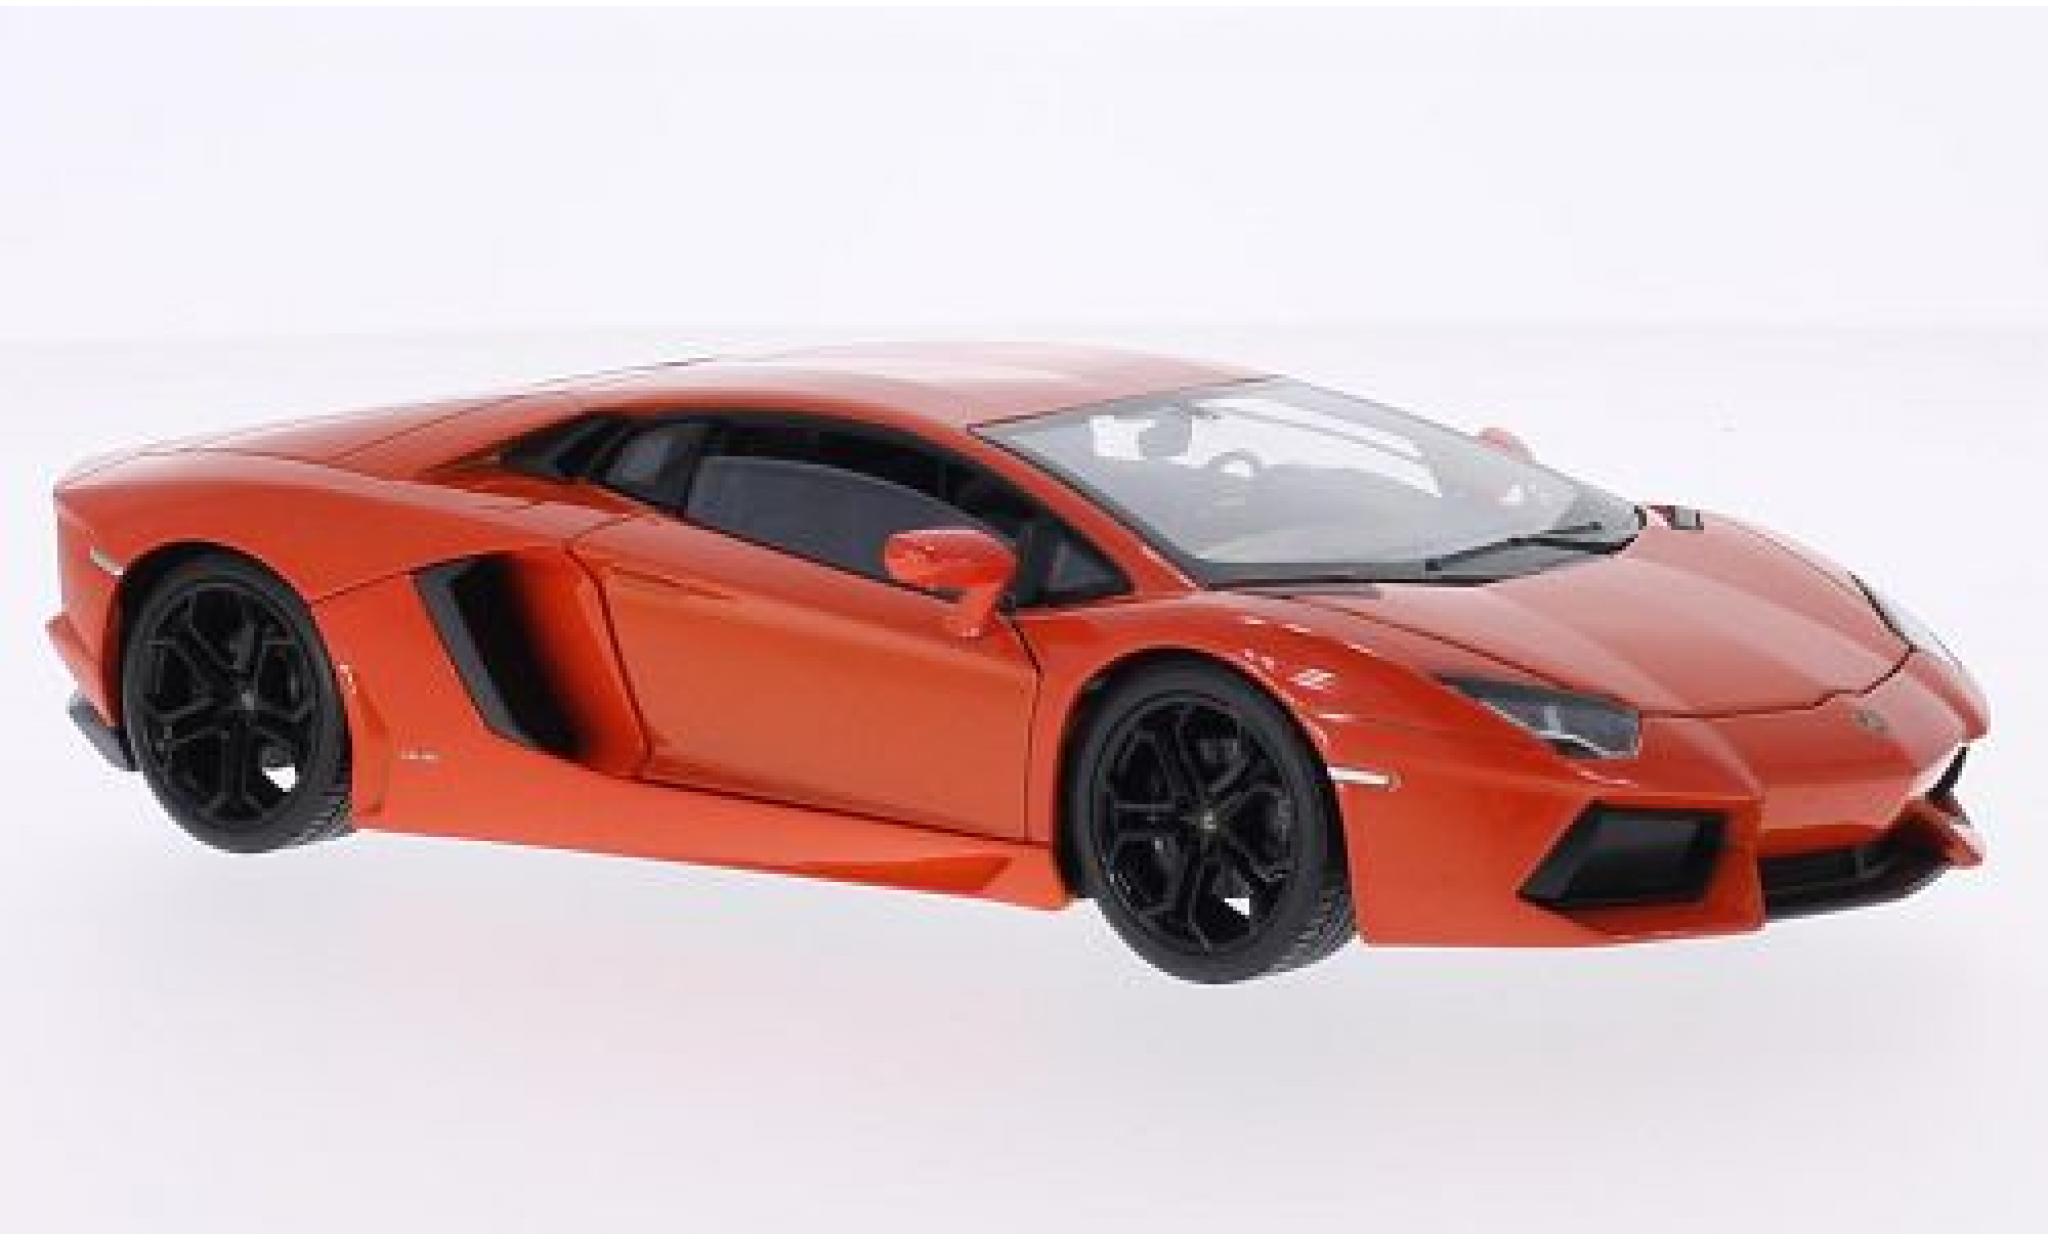 Modèle réduit de voiture : Lamborghini Aventador LP Echelle 1/24 Rouge